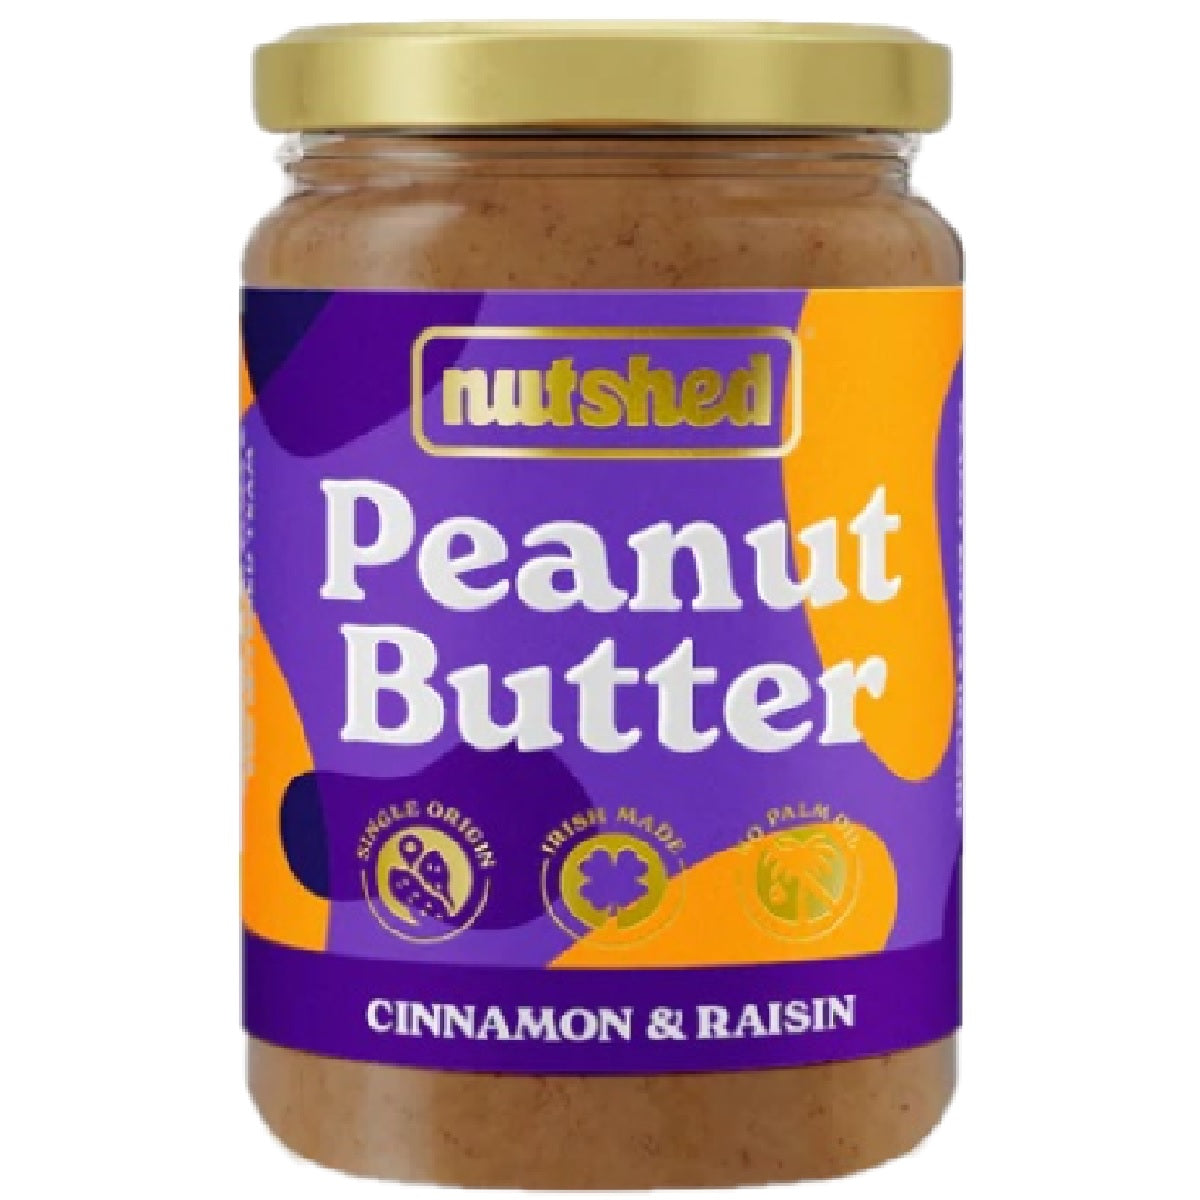 Nutshed Peanut Butter Cinnamon &amp; Raisin 280g